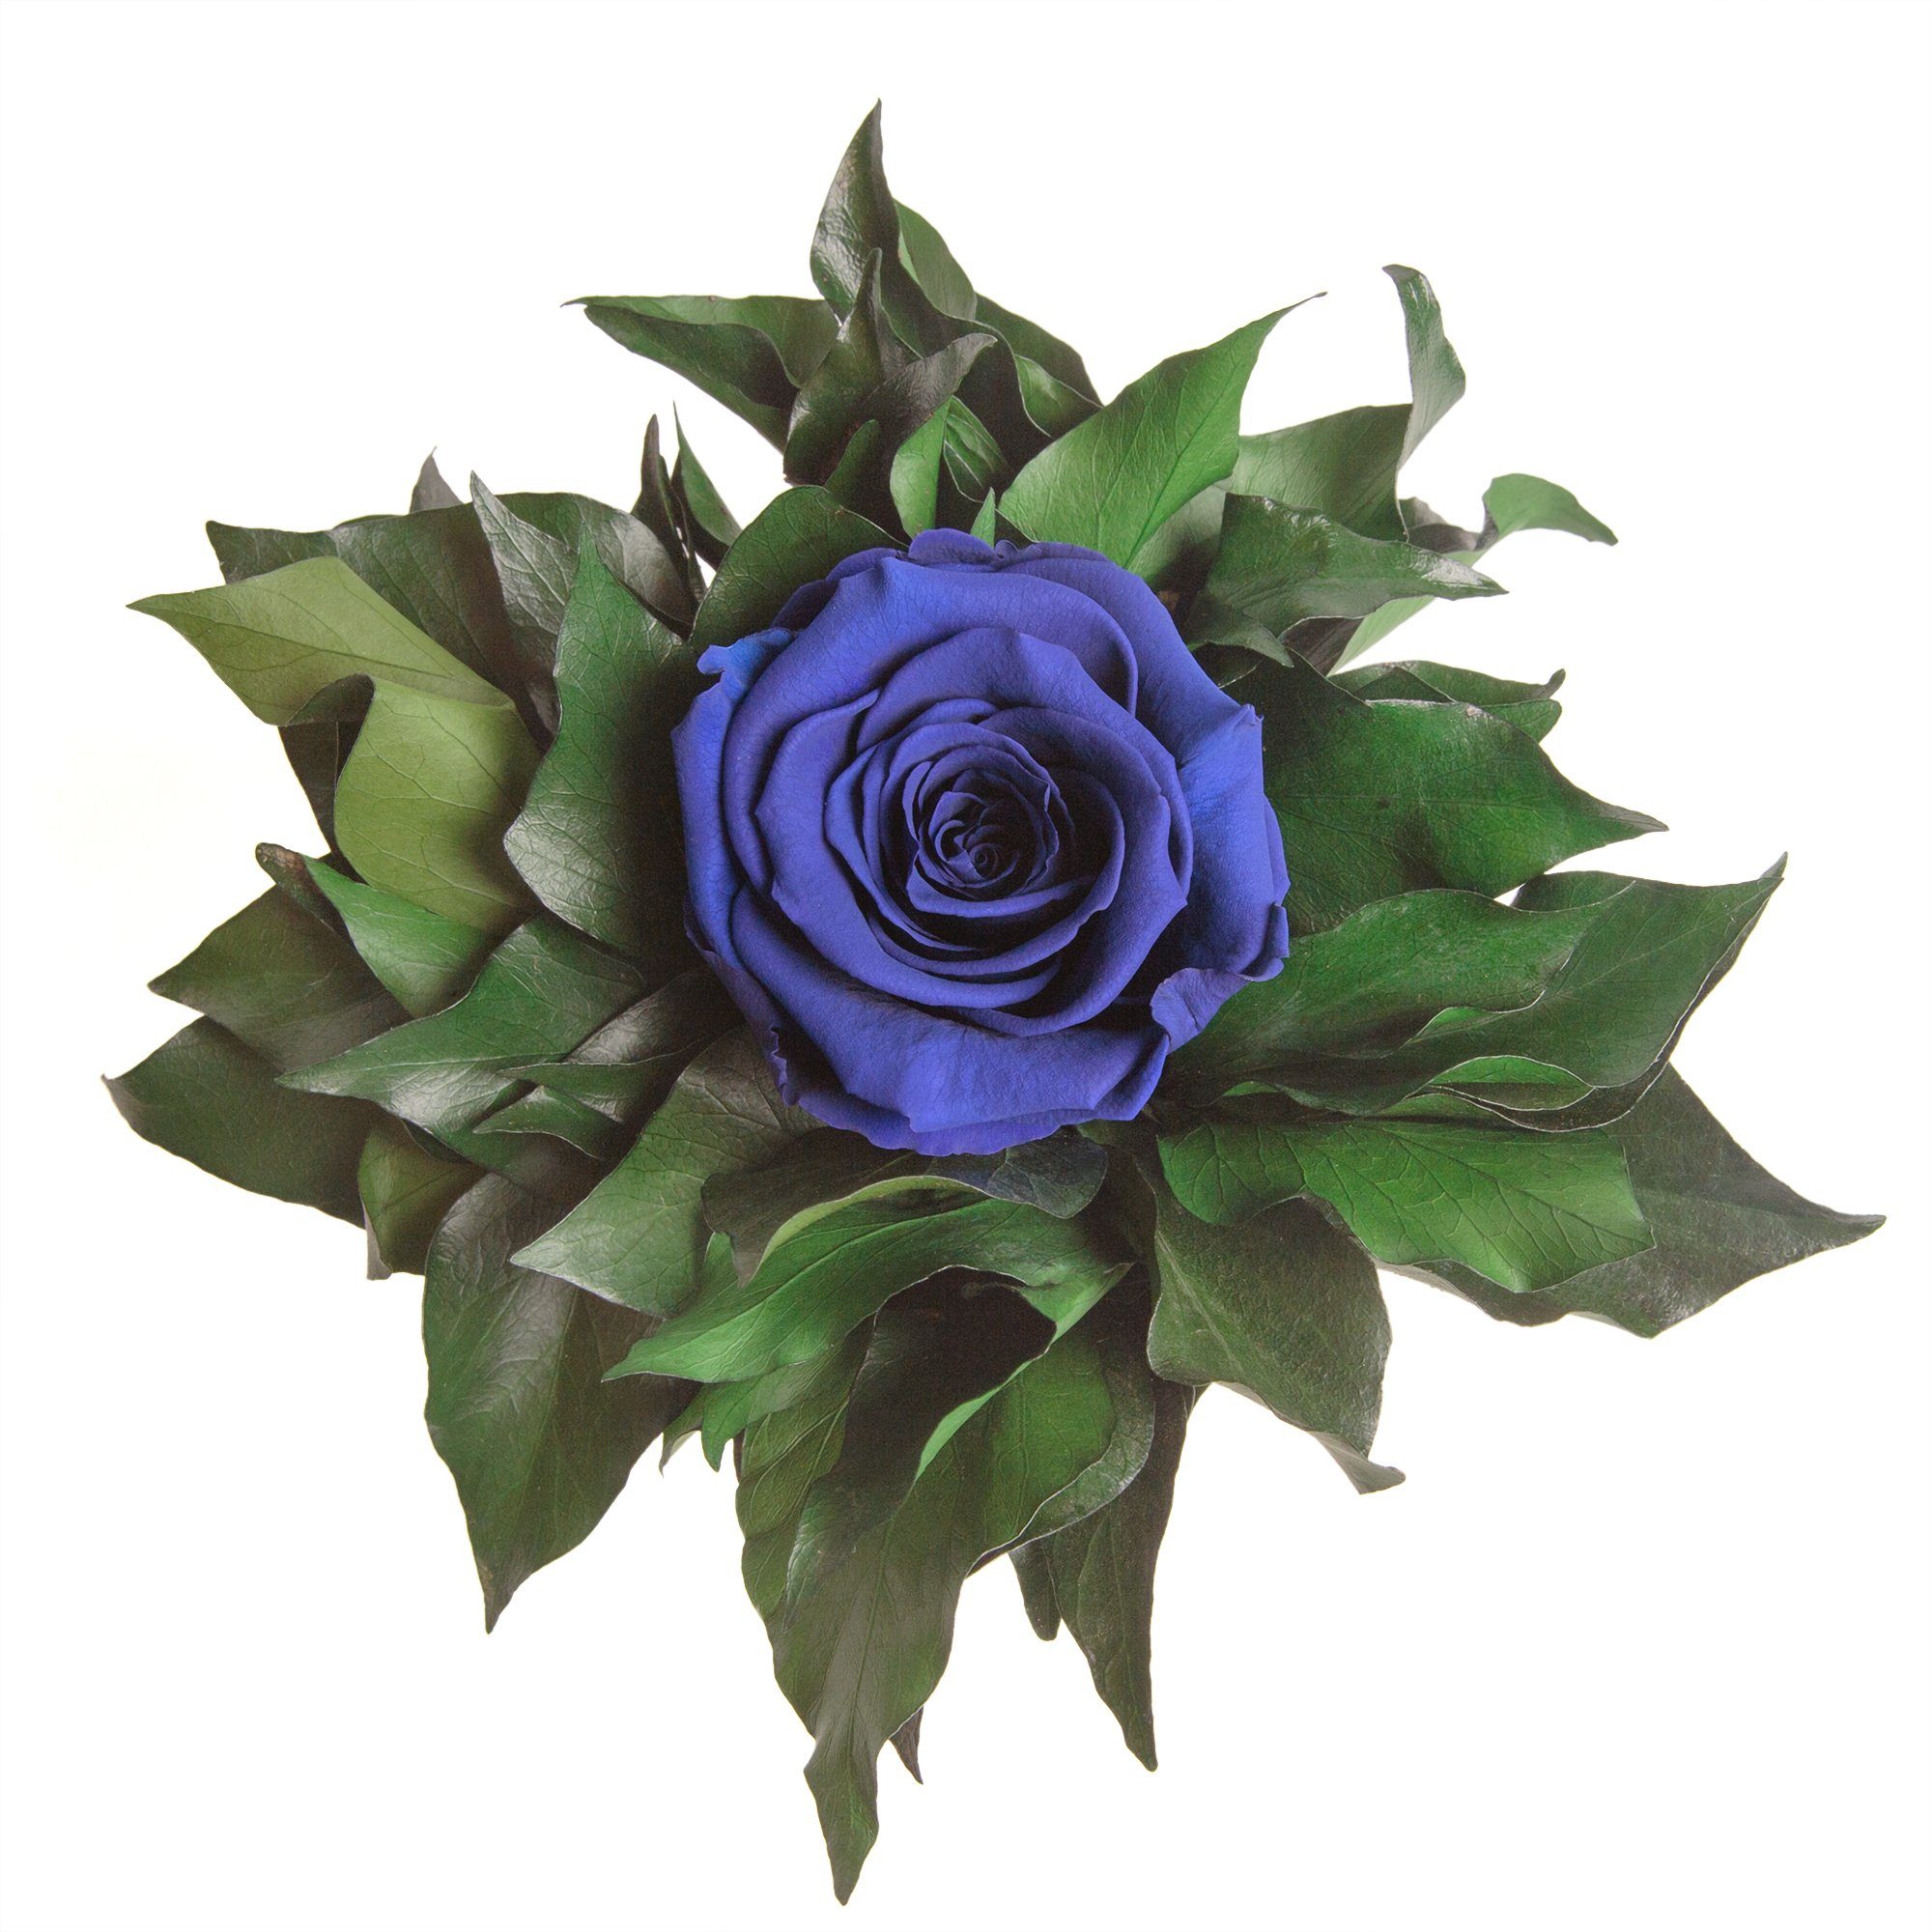 Blume lange Geschenkidee silberfarben 1 Künstliche Frauen SCHULZ haltbar Höhe Becher Blau für Infinity Zimmerpflanze 12 cm, Echte ROSEMARIE Rose Rose, Heidelberg,